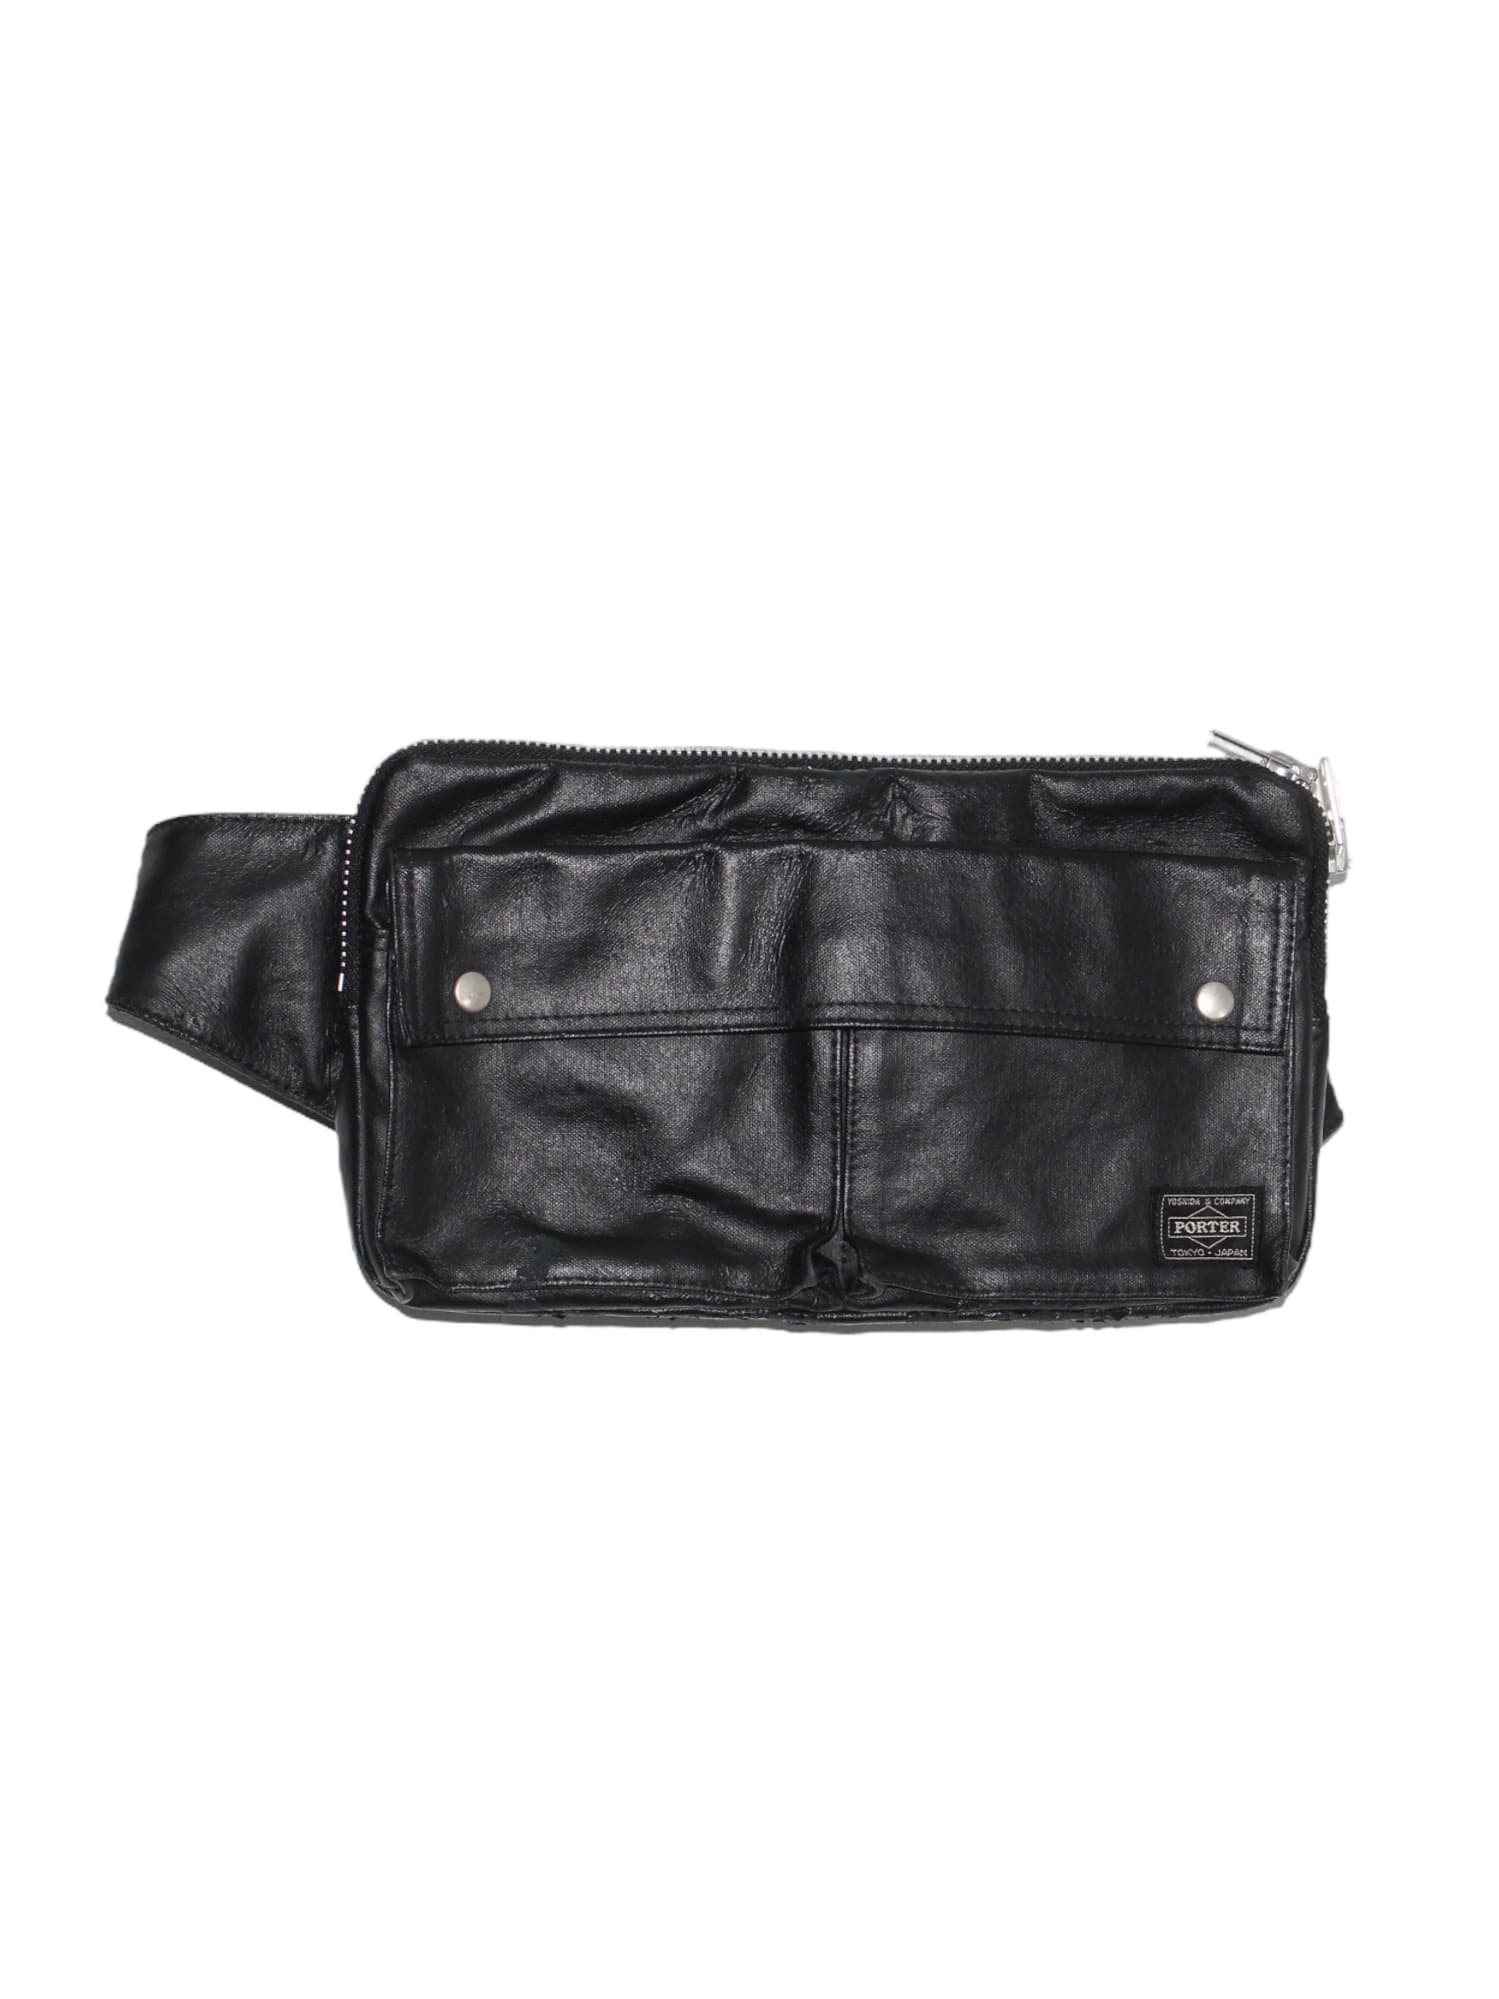 Yoshida Porter Leather One-way Waste Bag